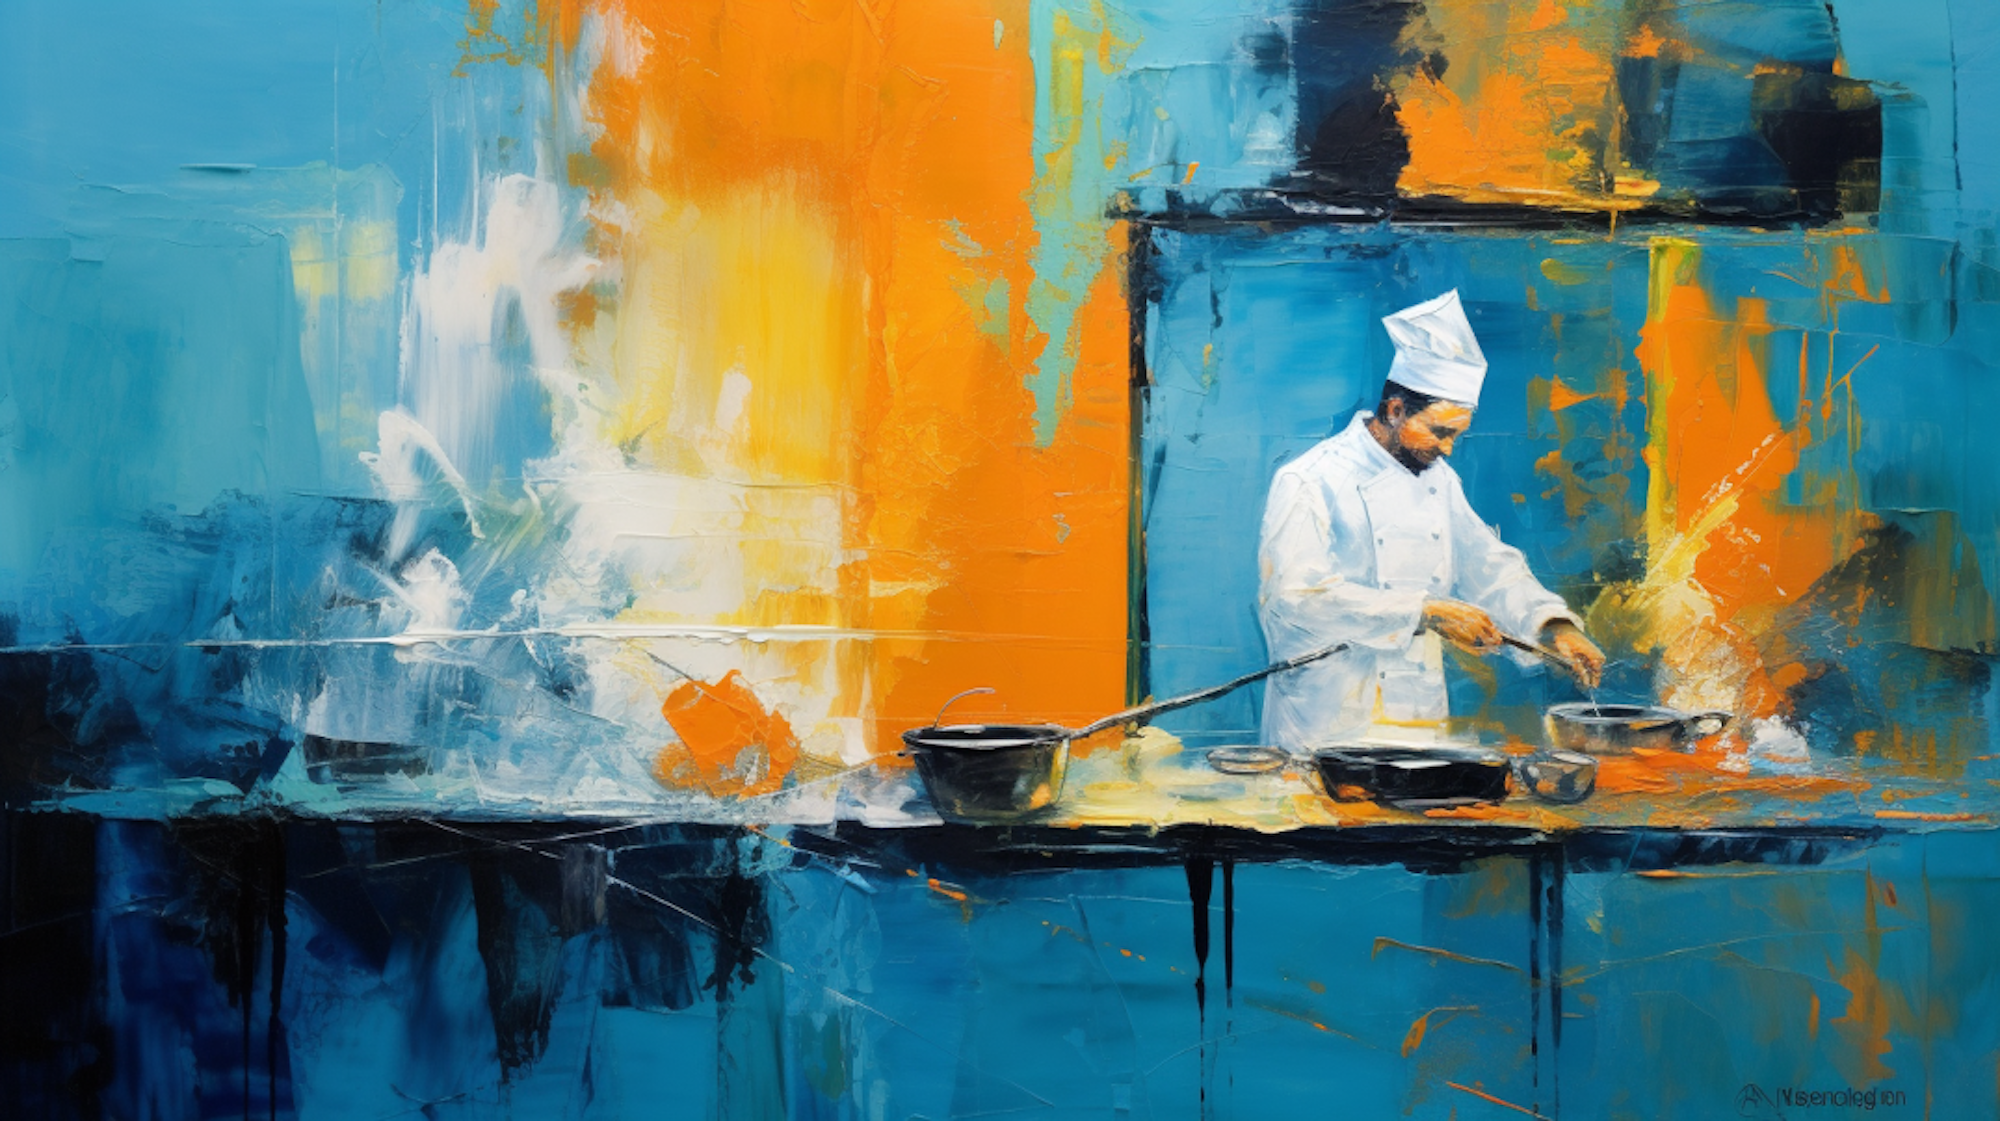 Abstrakte Darstellung eines Koch in einer Restaurantküche.